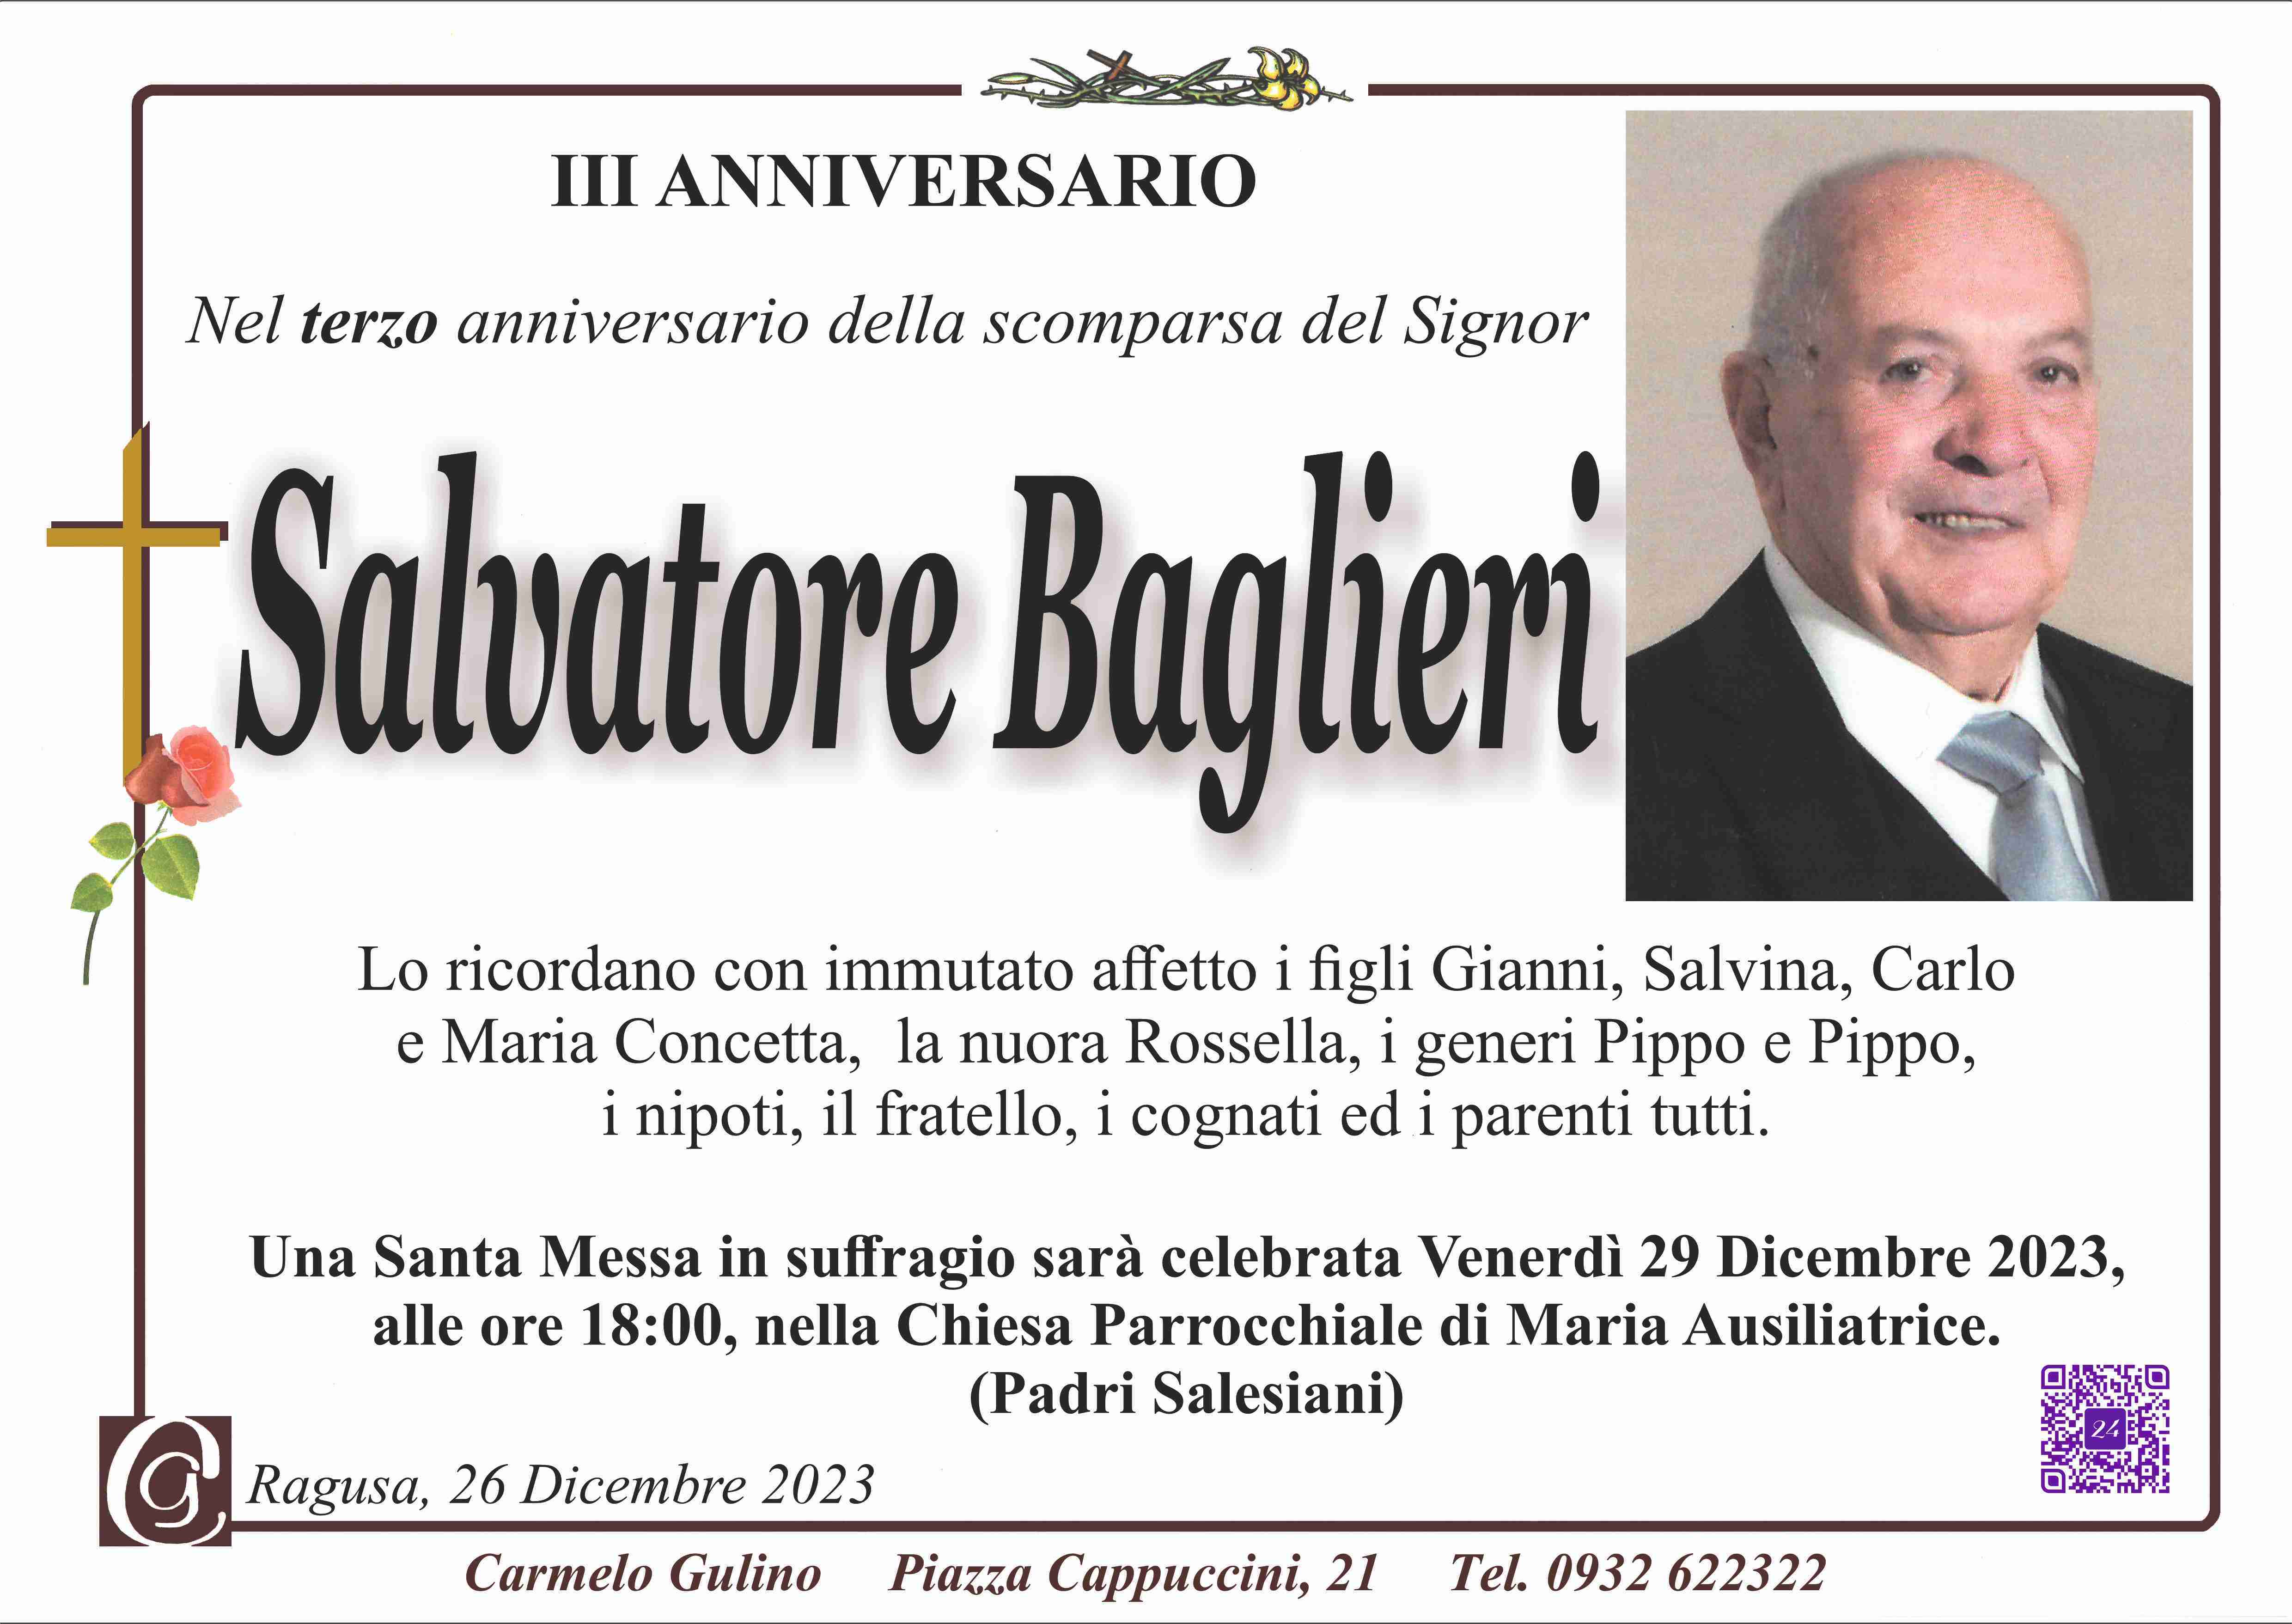 Salvatore Baglieri